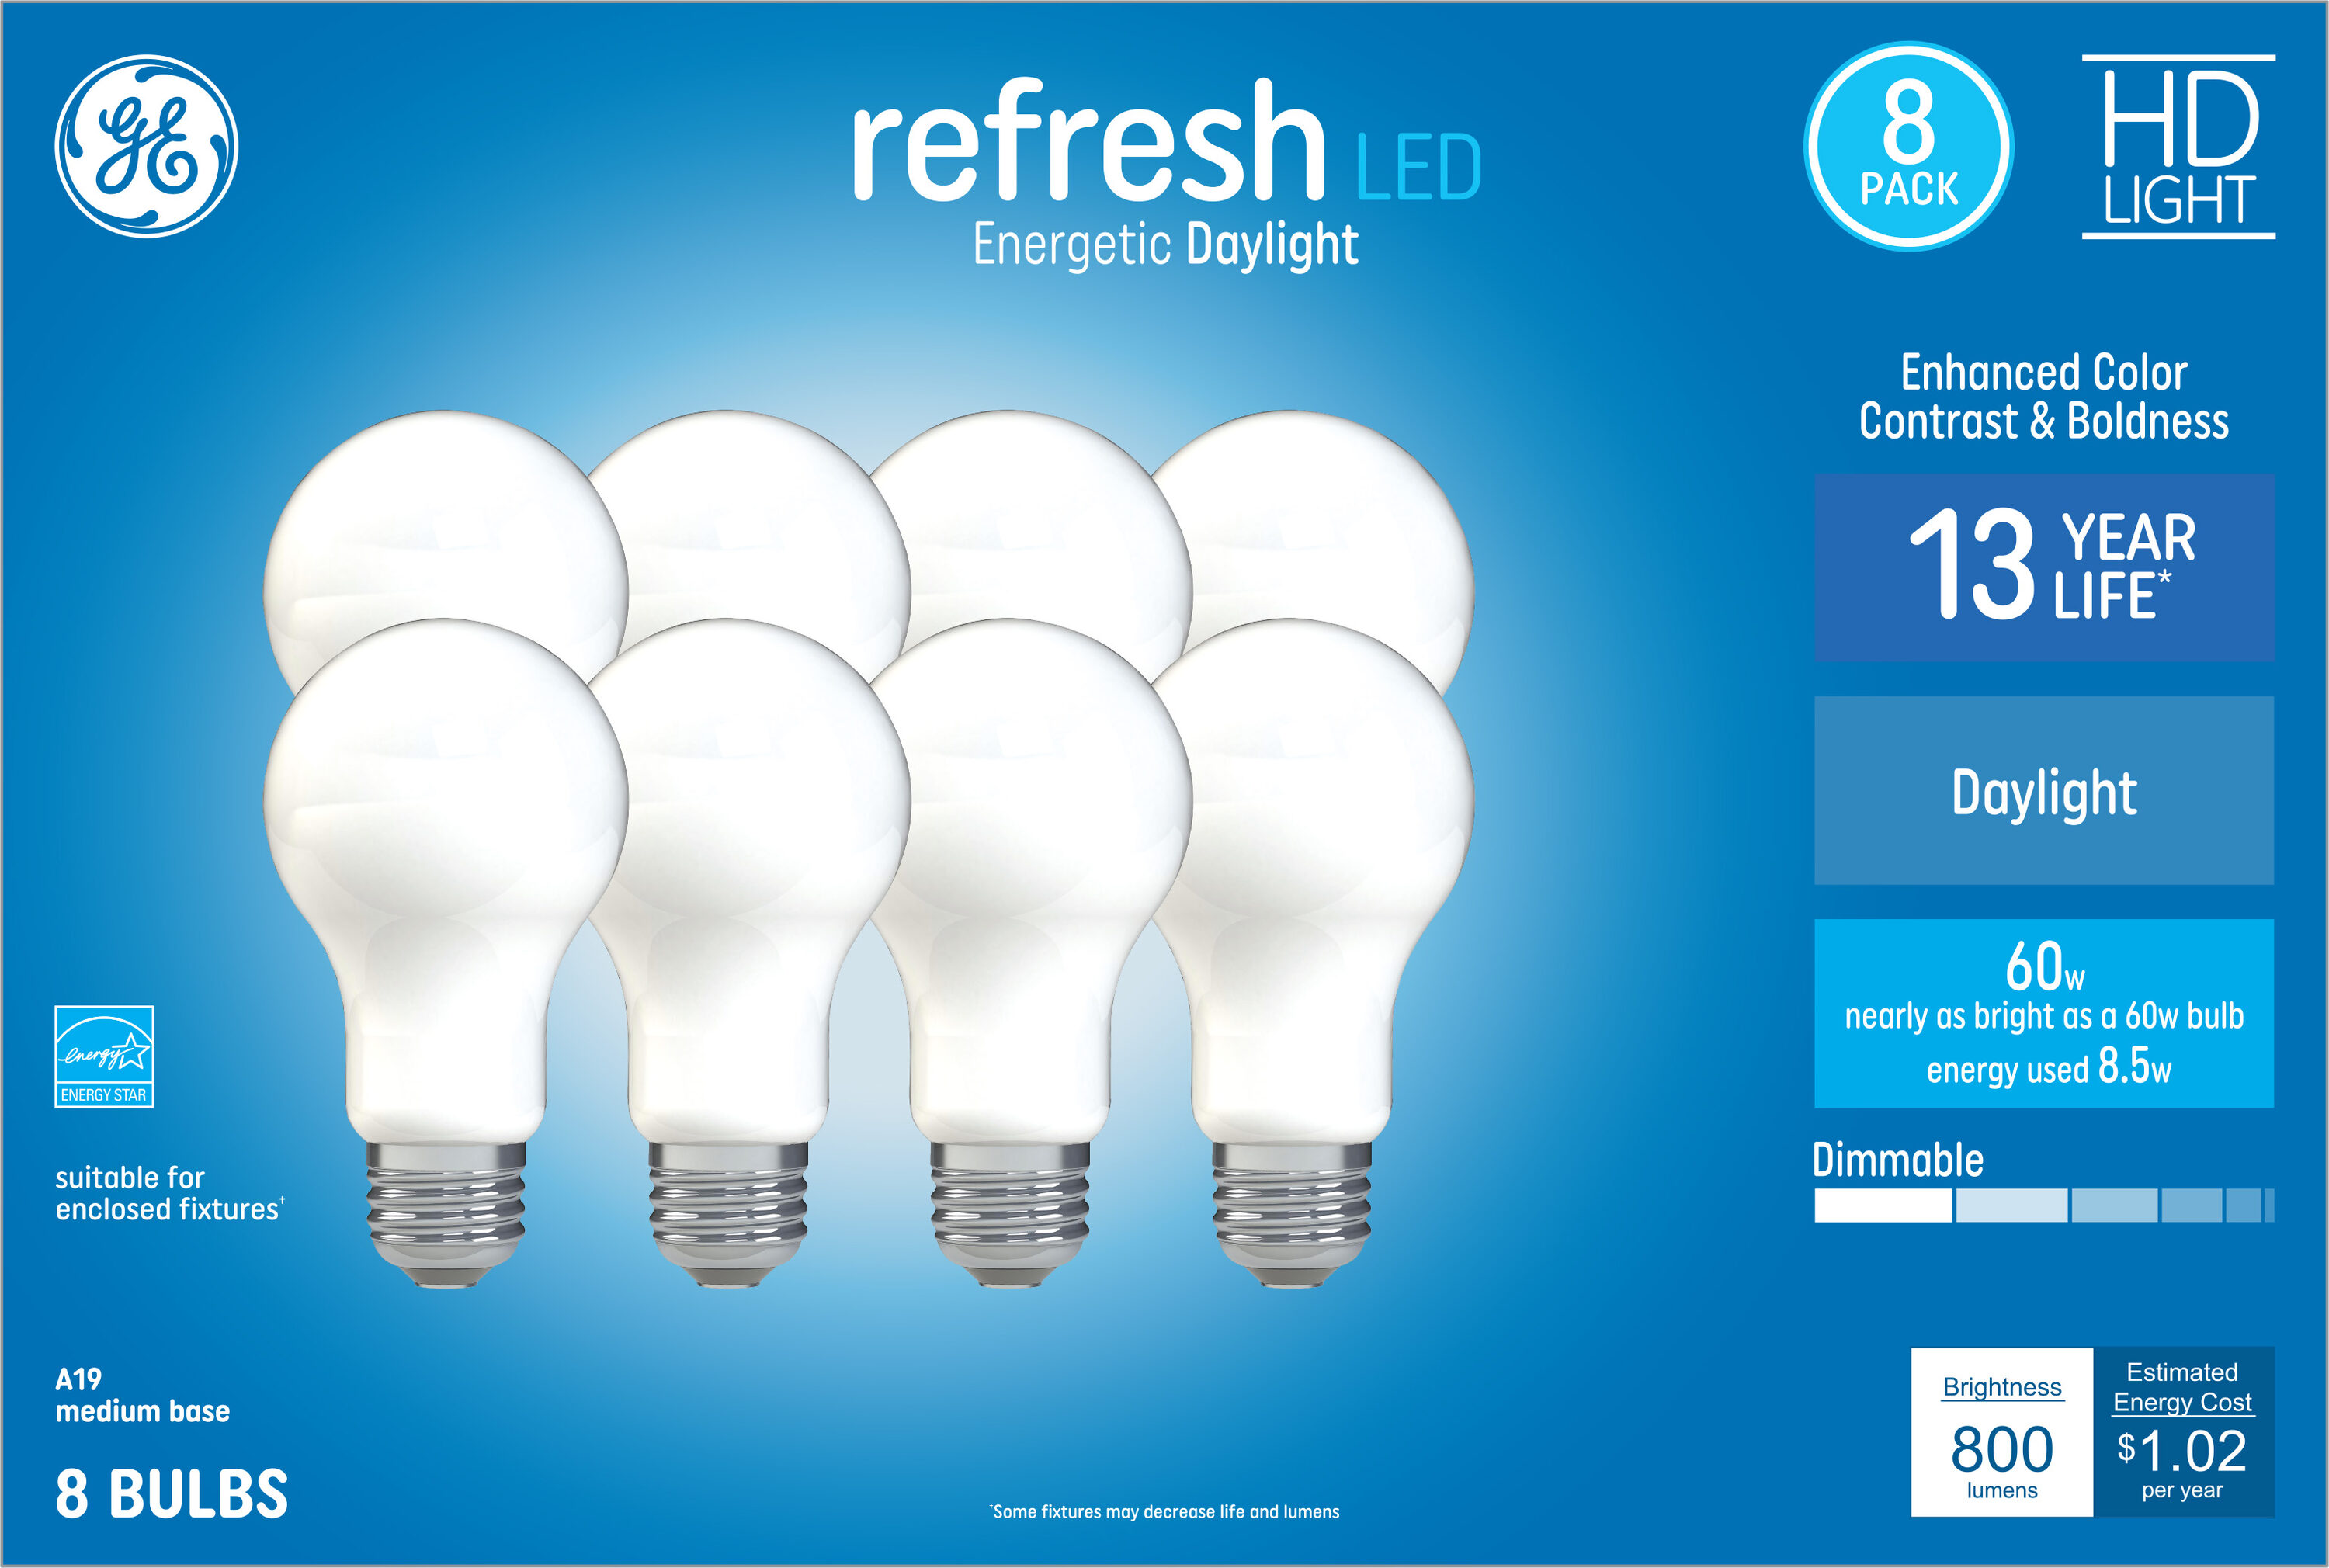 GE LED DAY REFRIG, Batteries & Lighting